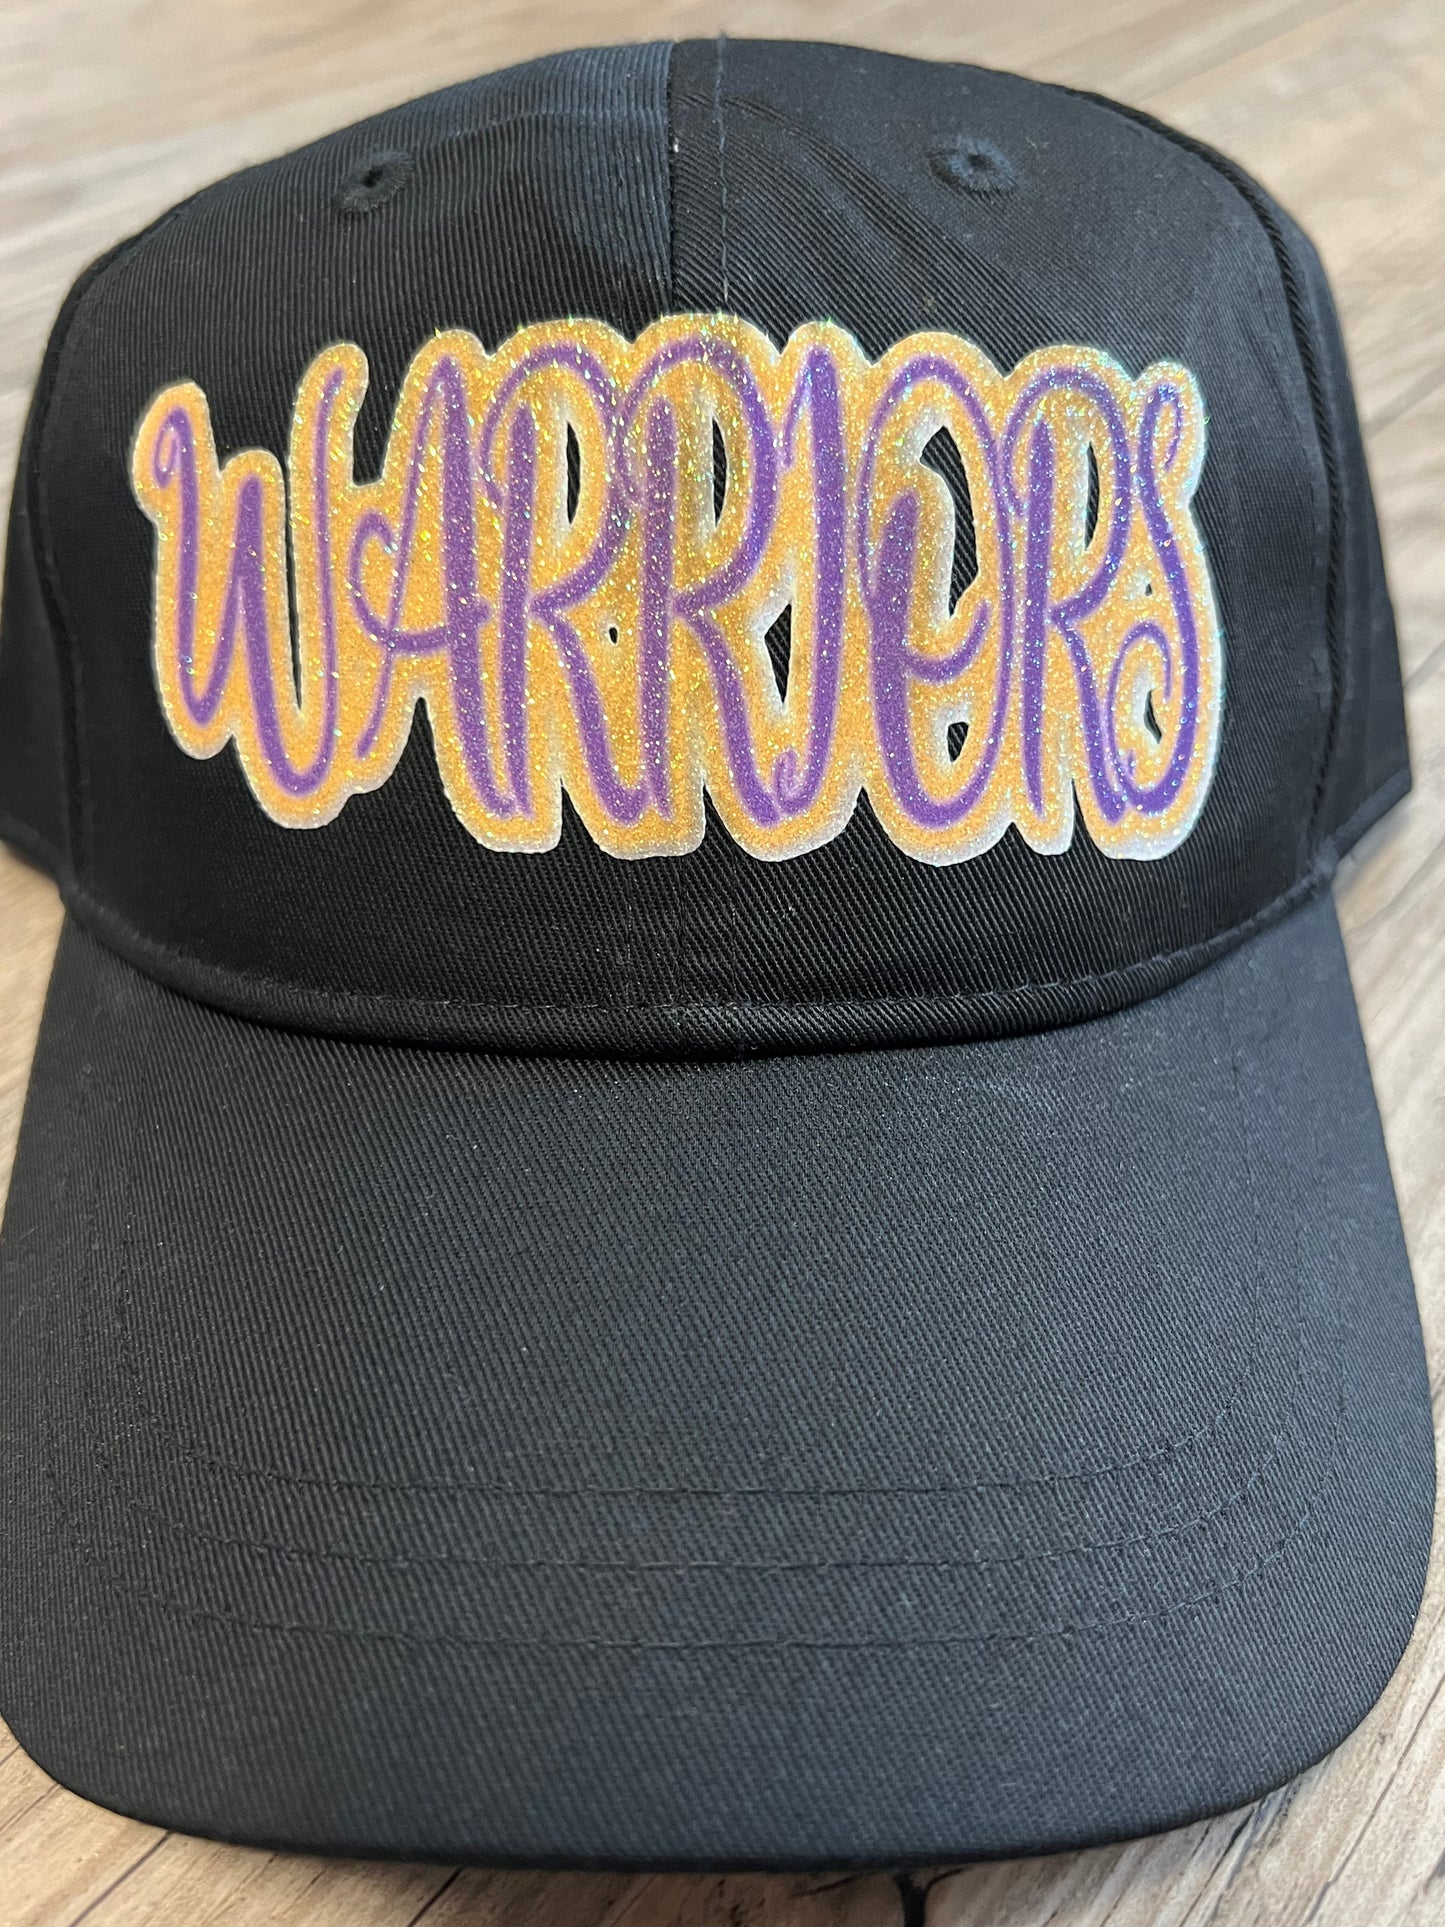 Warriors Caps no